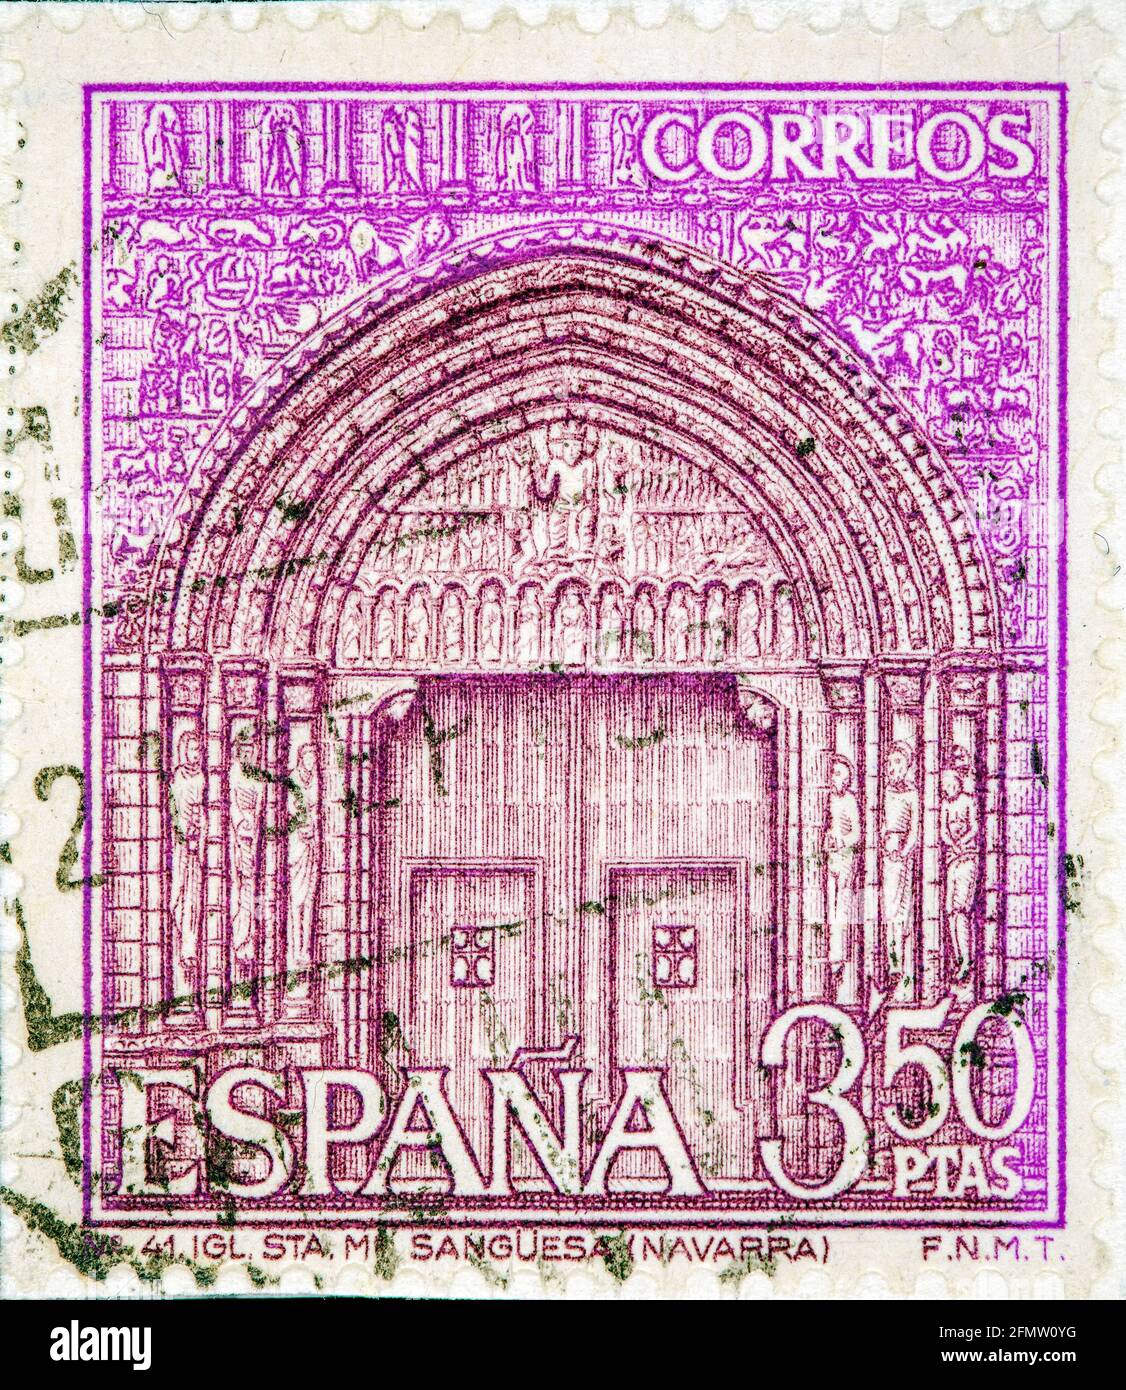 SPANIEN, UM 1968: Eine in Spanien gedruckte Marke zeigt Portal of St. Mary's Church, Sanguesa, Navarra, Spanien, um 1968 Stockfoto